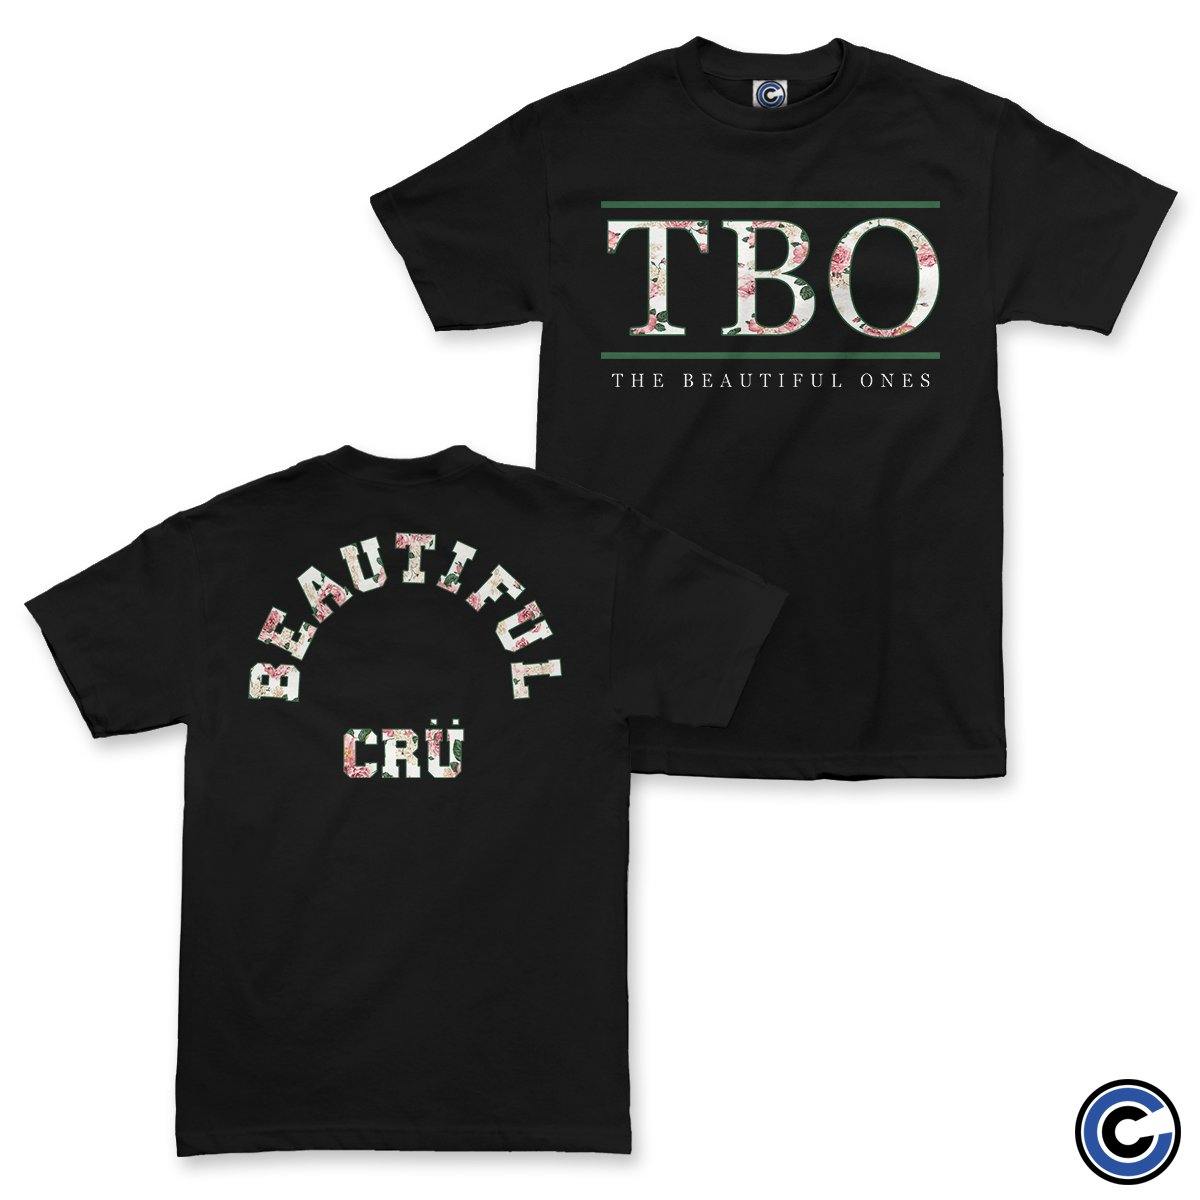 Buy – The Beautiful Ones "Cru" Shirt – Band & Music Merch – Cold Cuts Merch